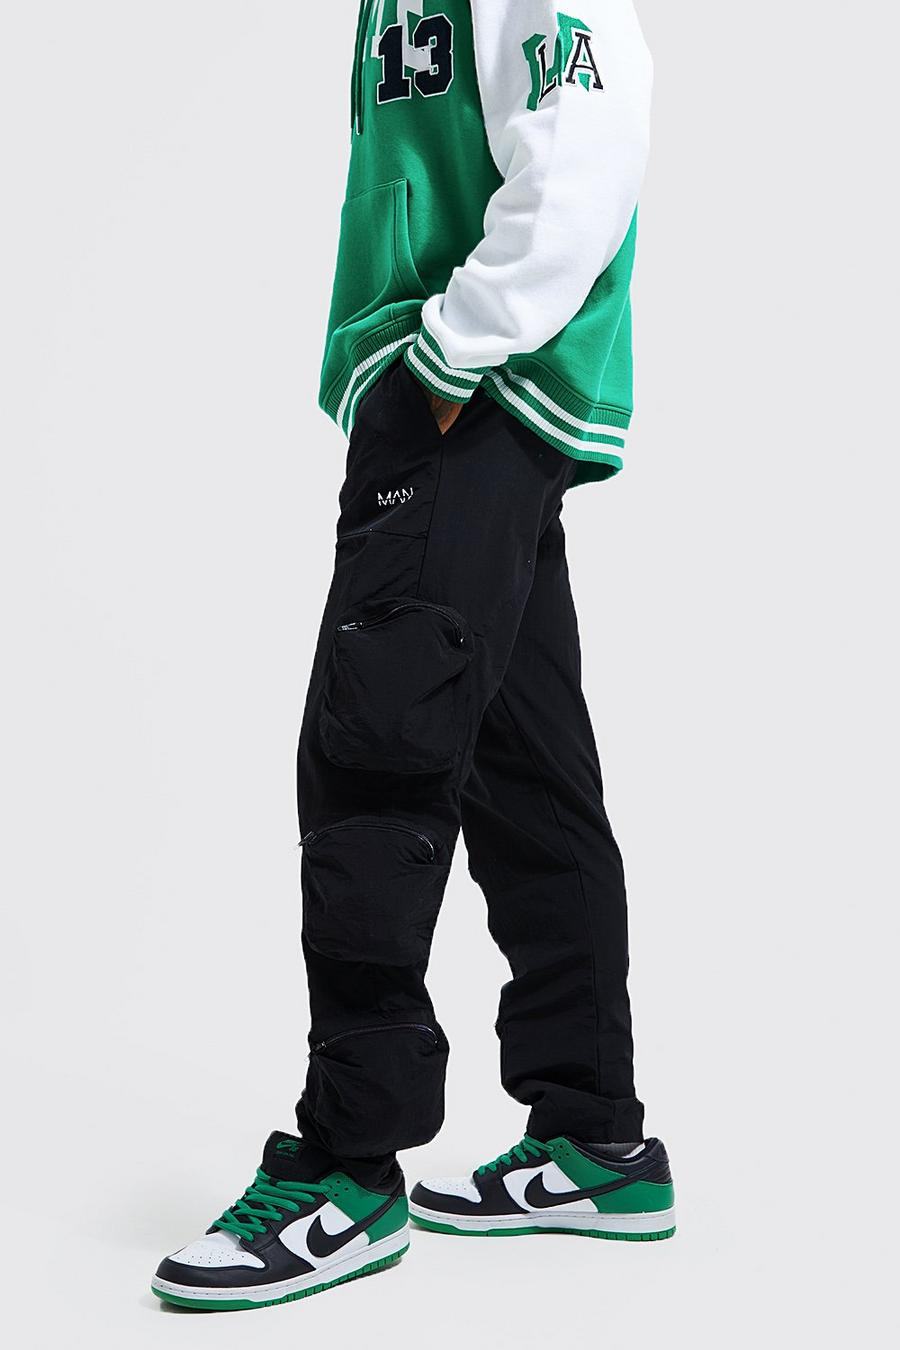 שחור מכנסי דגמ"ח עם ציפוי עמיד, כיסים תלת-ממדיים וכיתוב Original Man image number 1